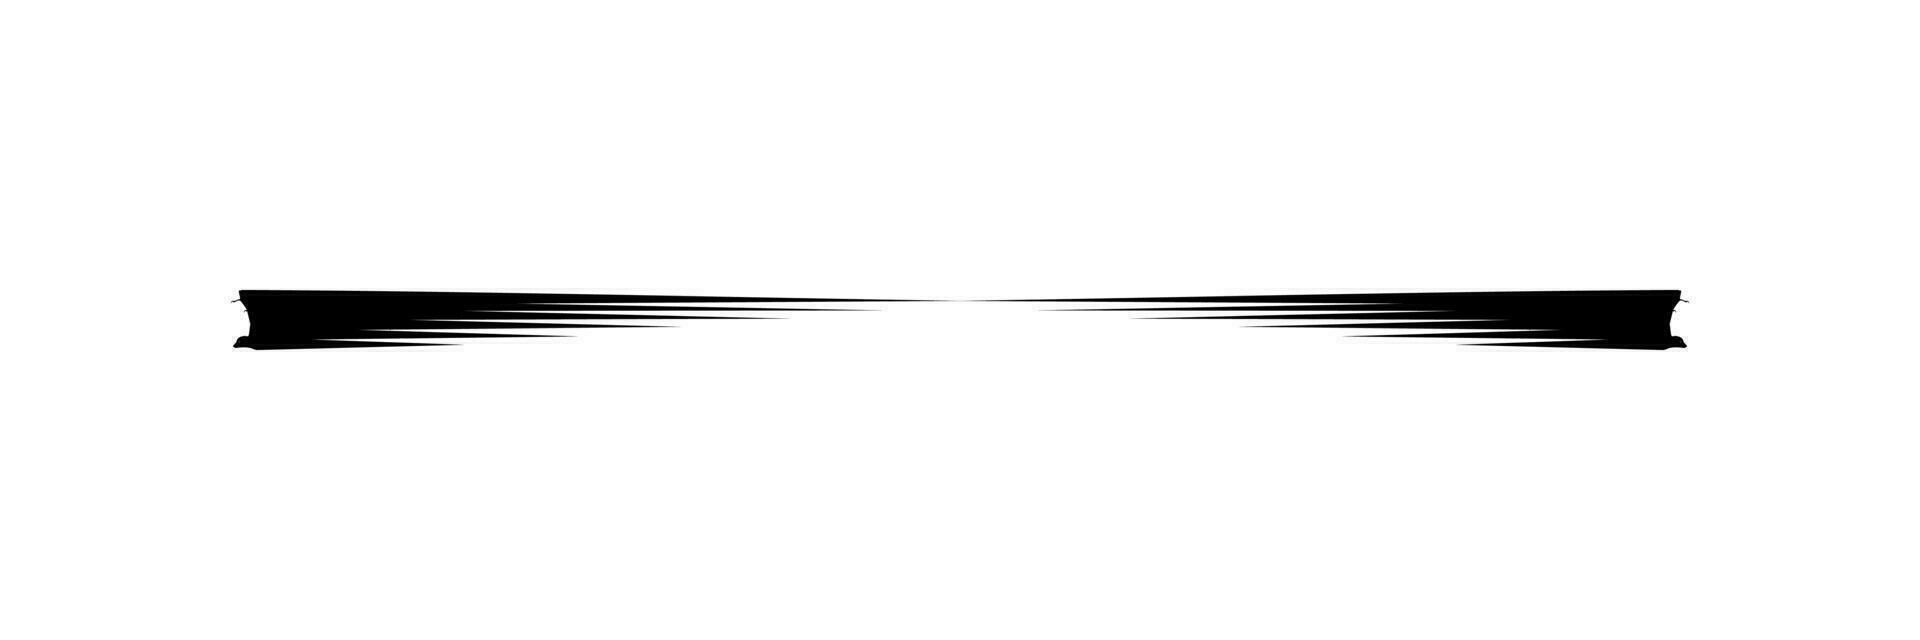 deformation av de flygande fladdermus eller flygande räv silhuett, för logotyp, piktogram, hemsida, konst illustration, eller grafisk design element. vektor illustration